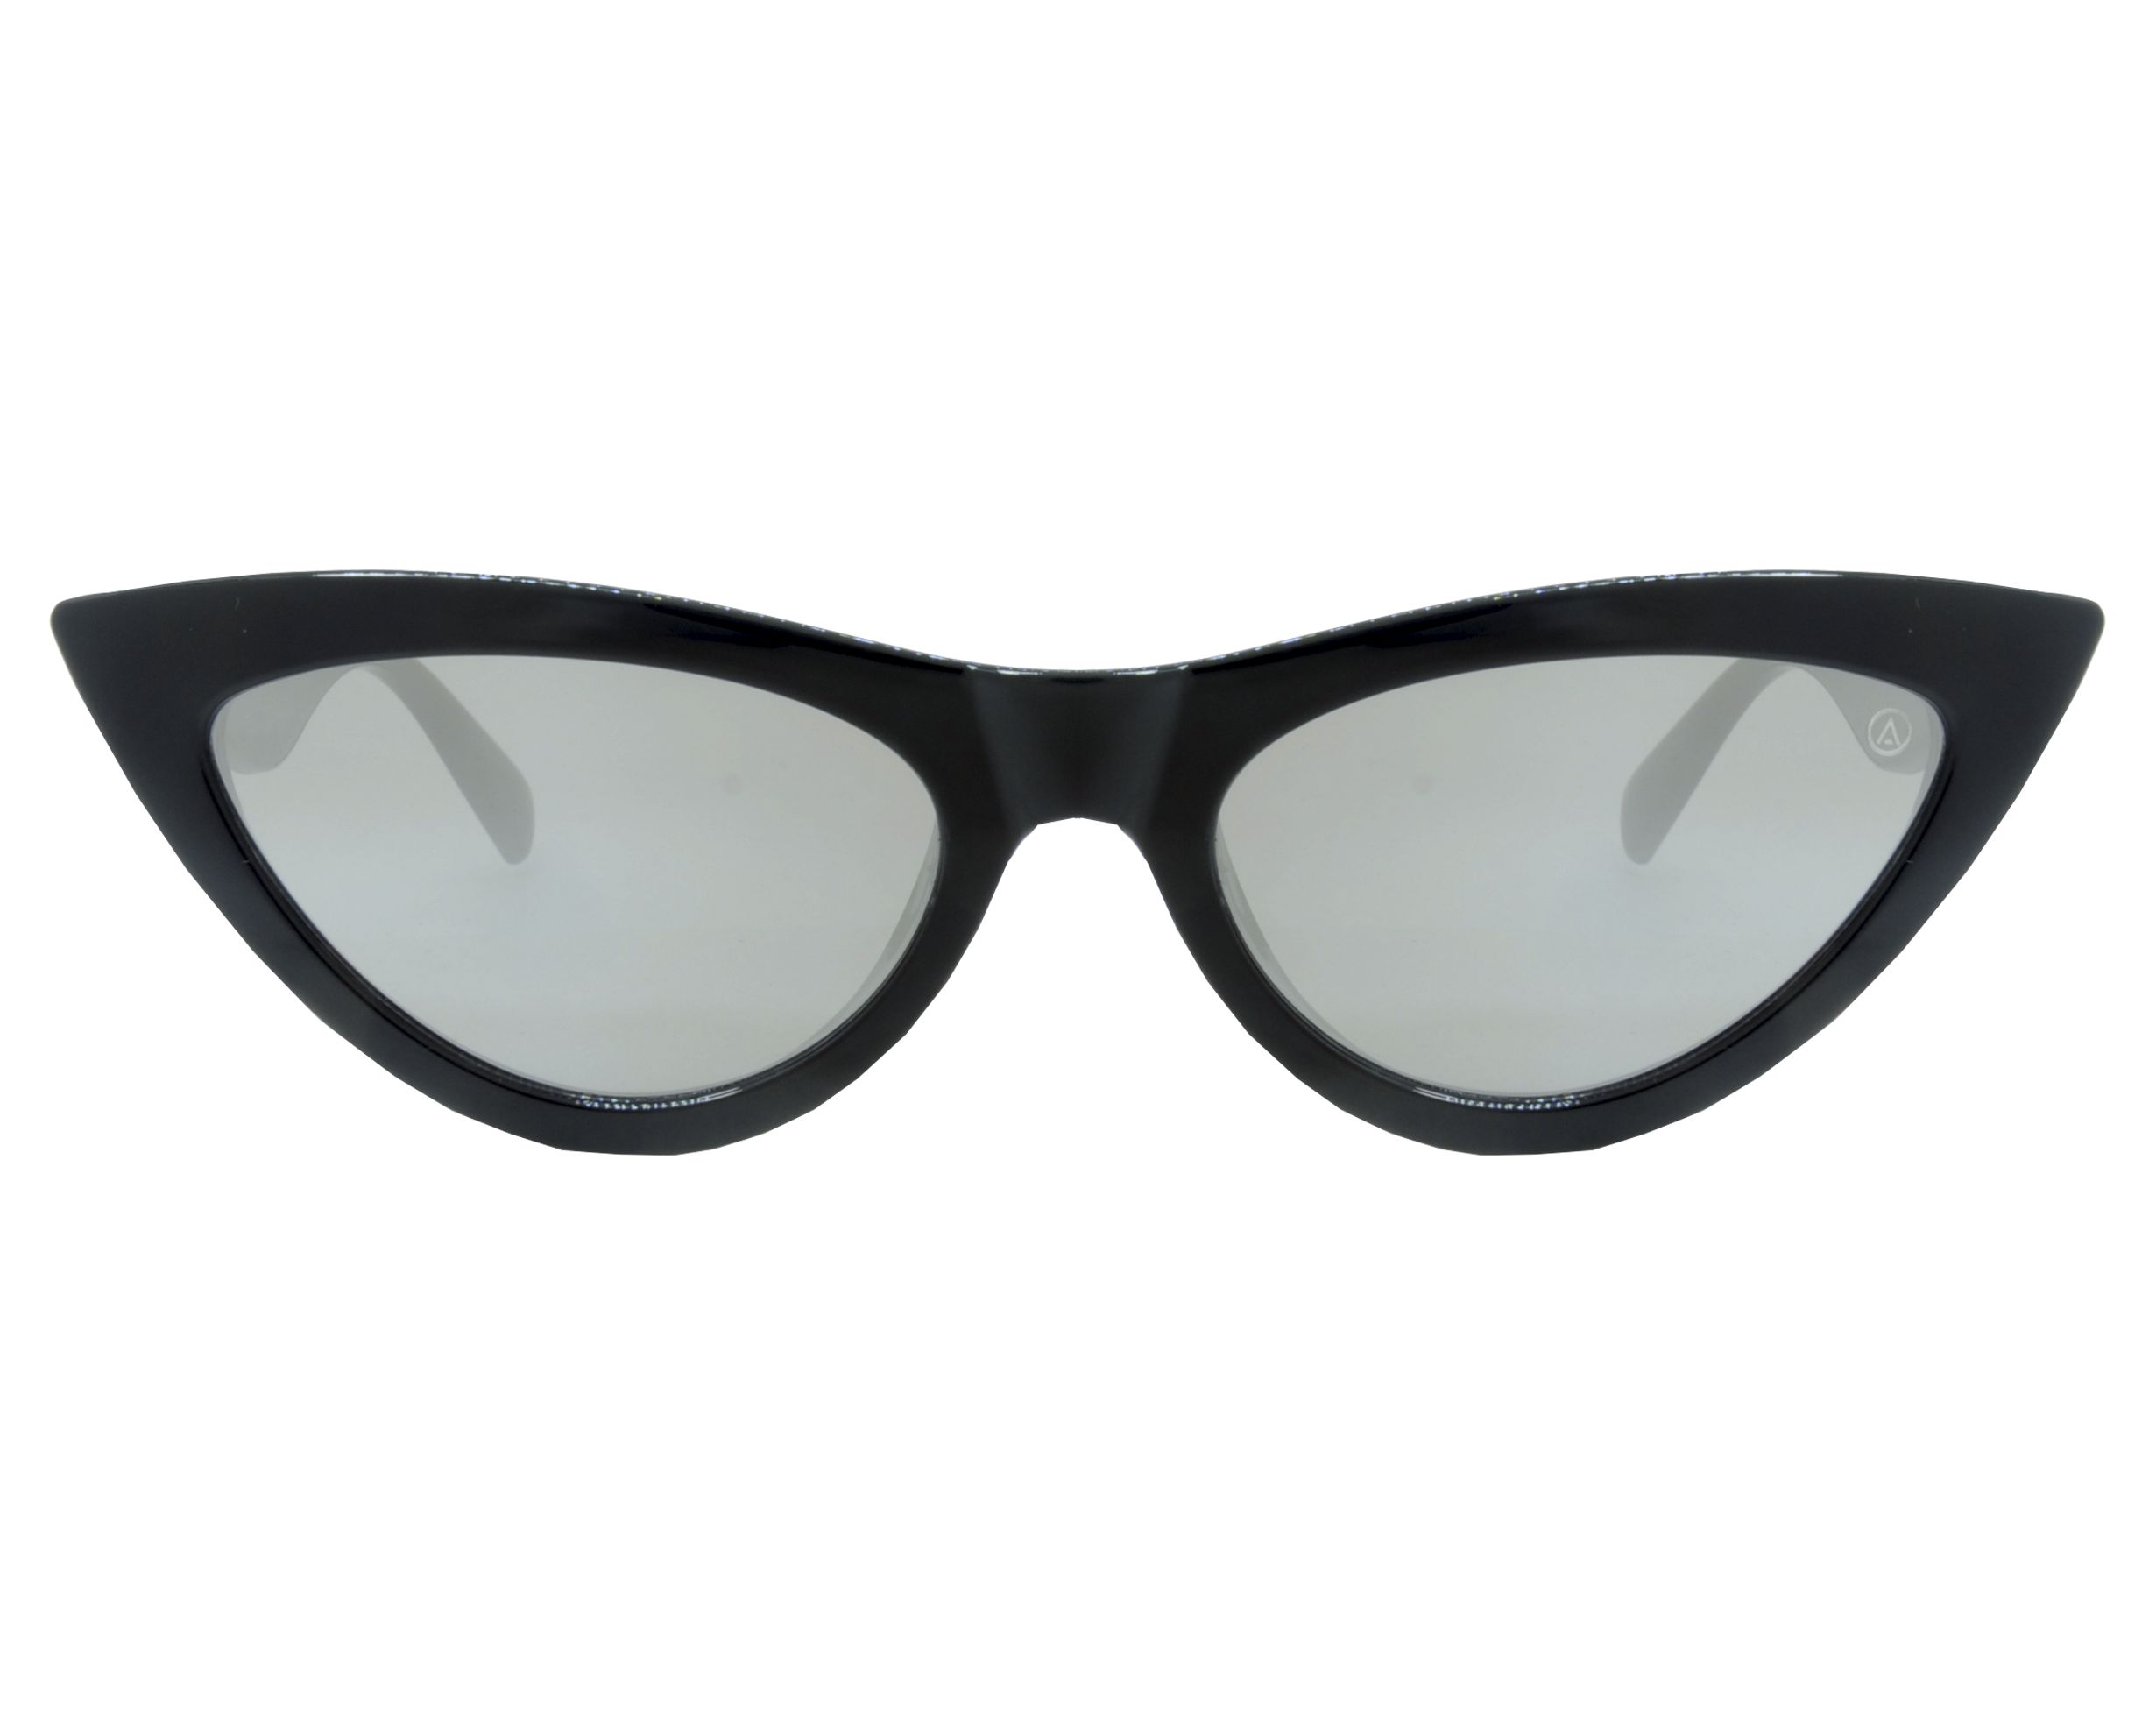 Óculos de Sol Chat Noir Preto Espelhado | Les Bains - Óculos de Sol,  Armações e Lentes de Grau | Les Bains